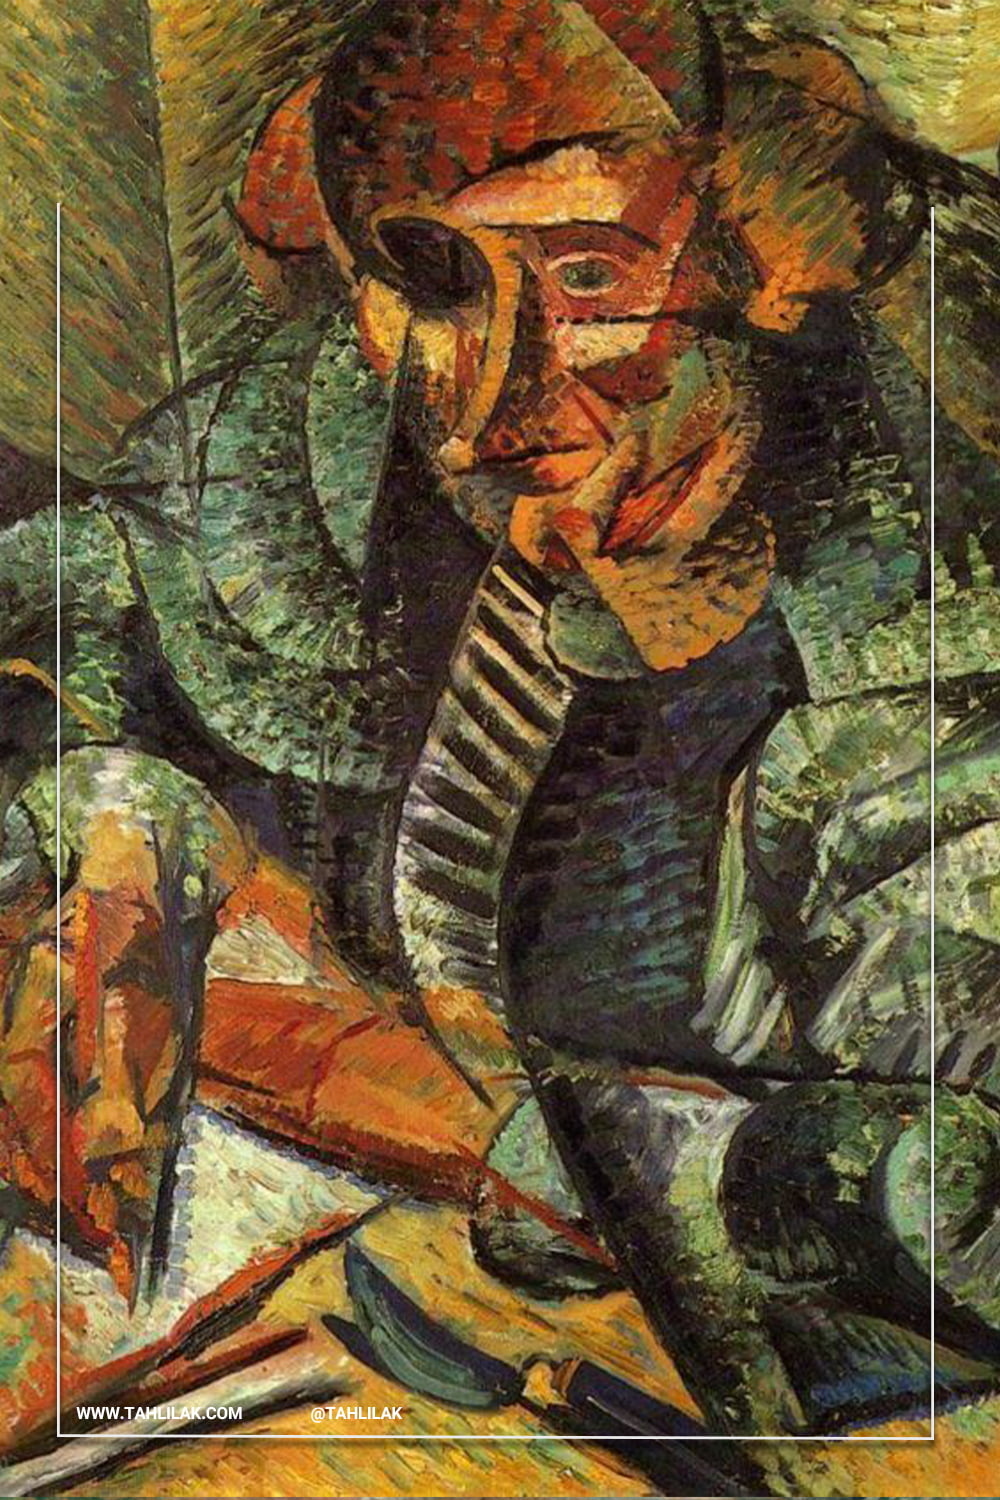 آمبرتو بوچینی (Umberto Boccioni) هنرمند برجسته جنبش فوتوریسم